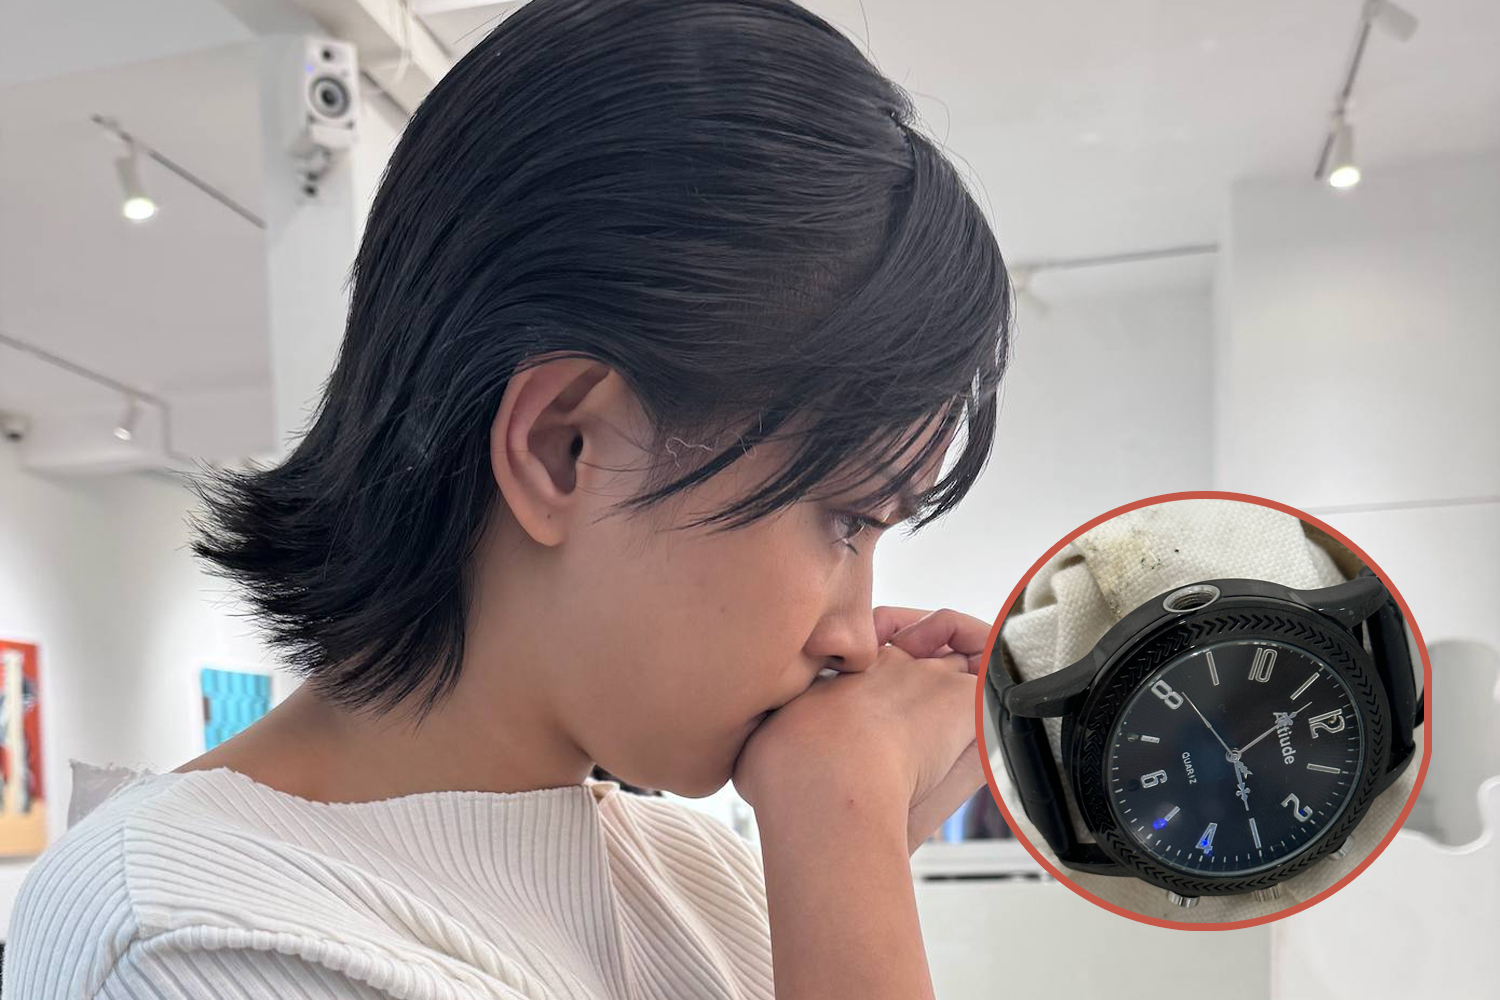 Châu Bùi và chiếc camera quay lén ngụy trang đồng hồ đeo tay được phát hiện trong một studio chụp ảnh ở TP HCM. Ảnh: Facebook Châu Bùi